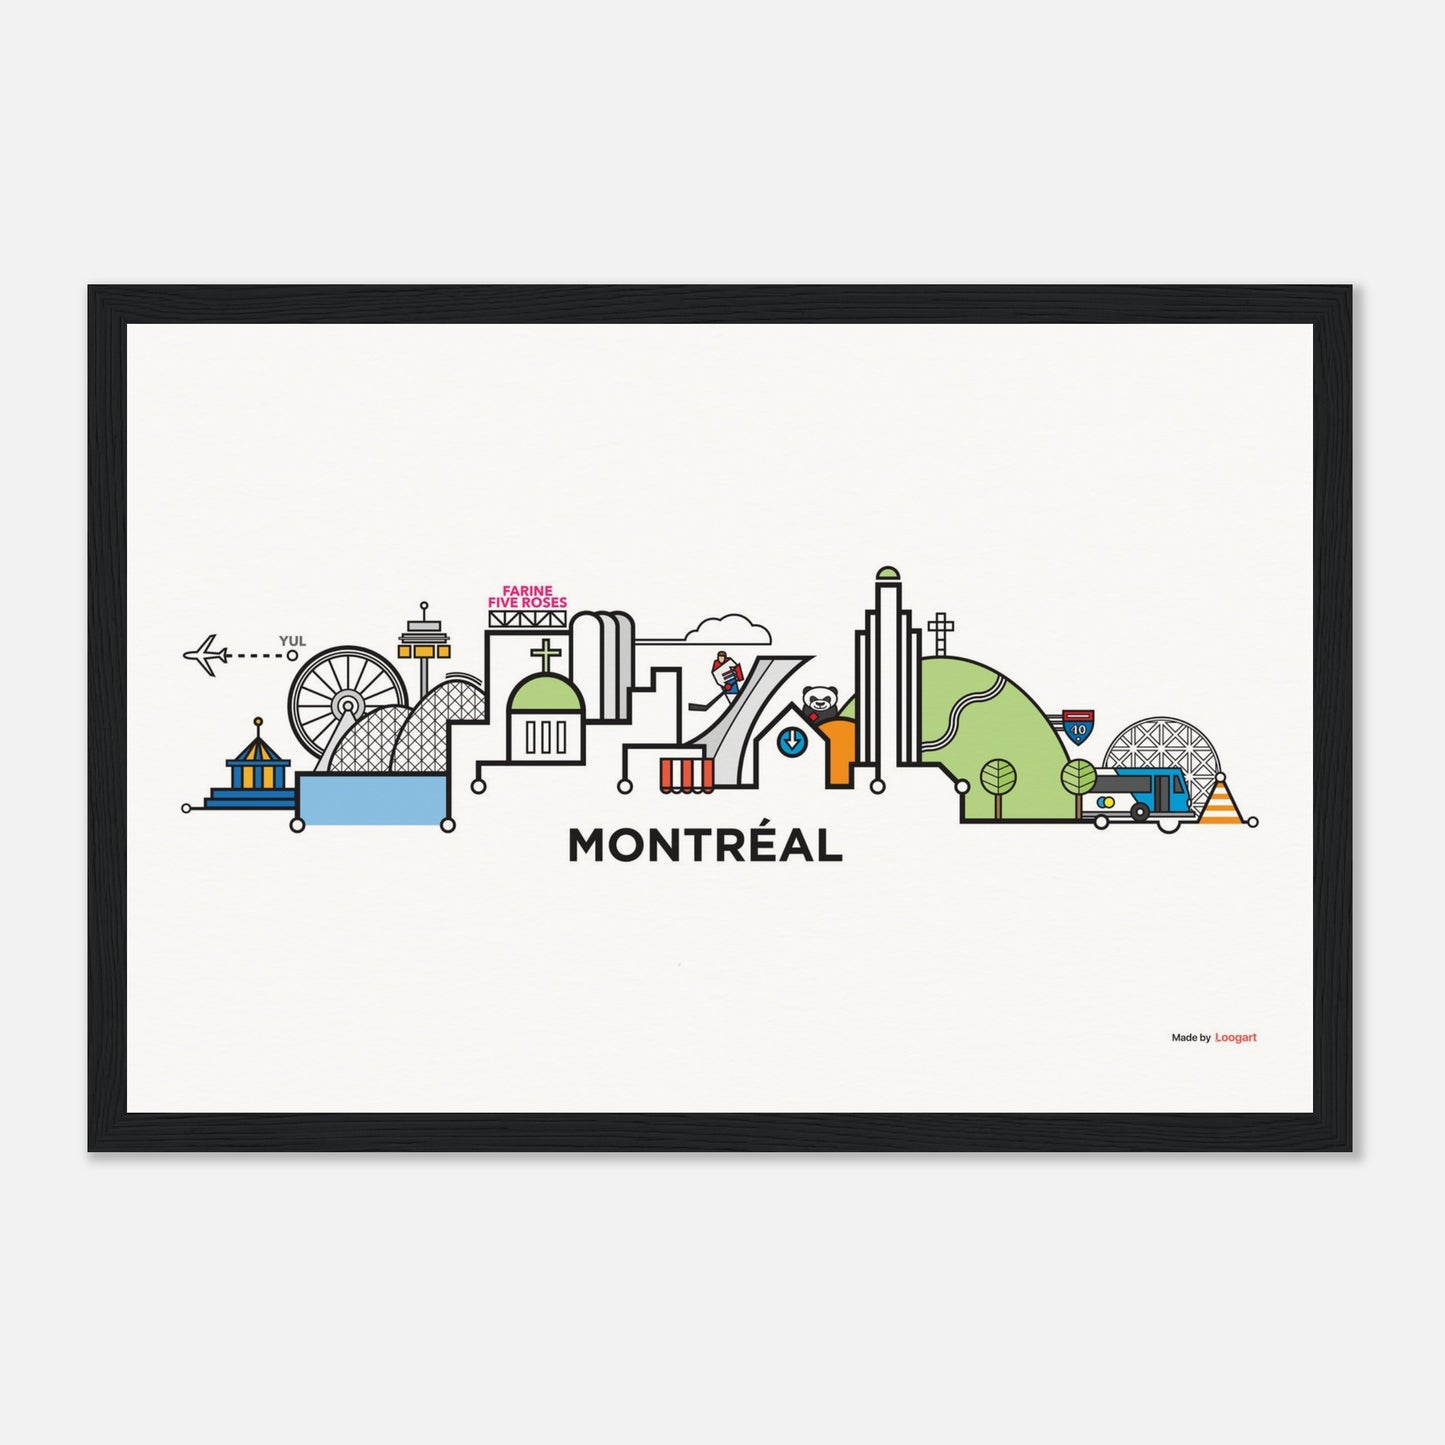 Montreal CityLine by Loogart